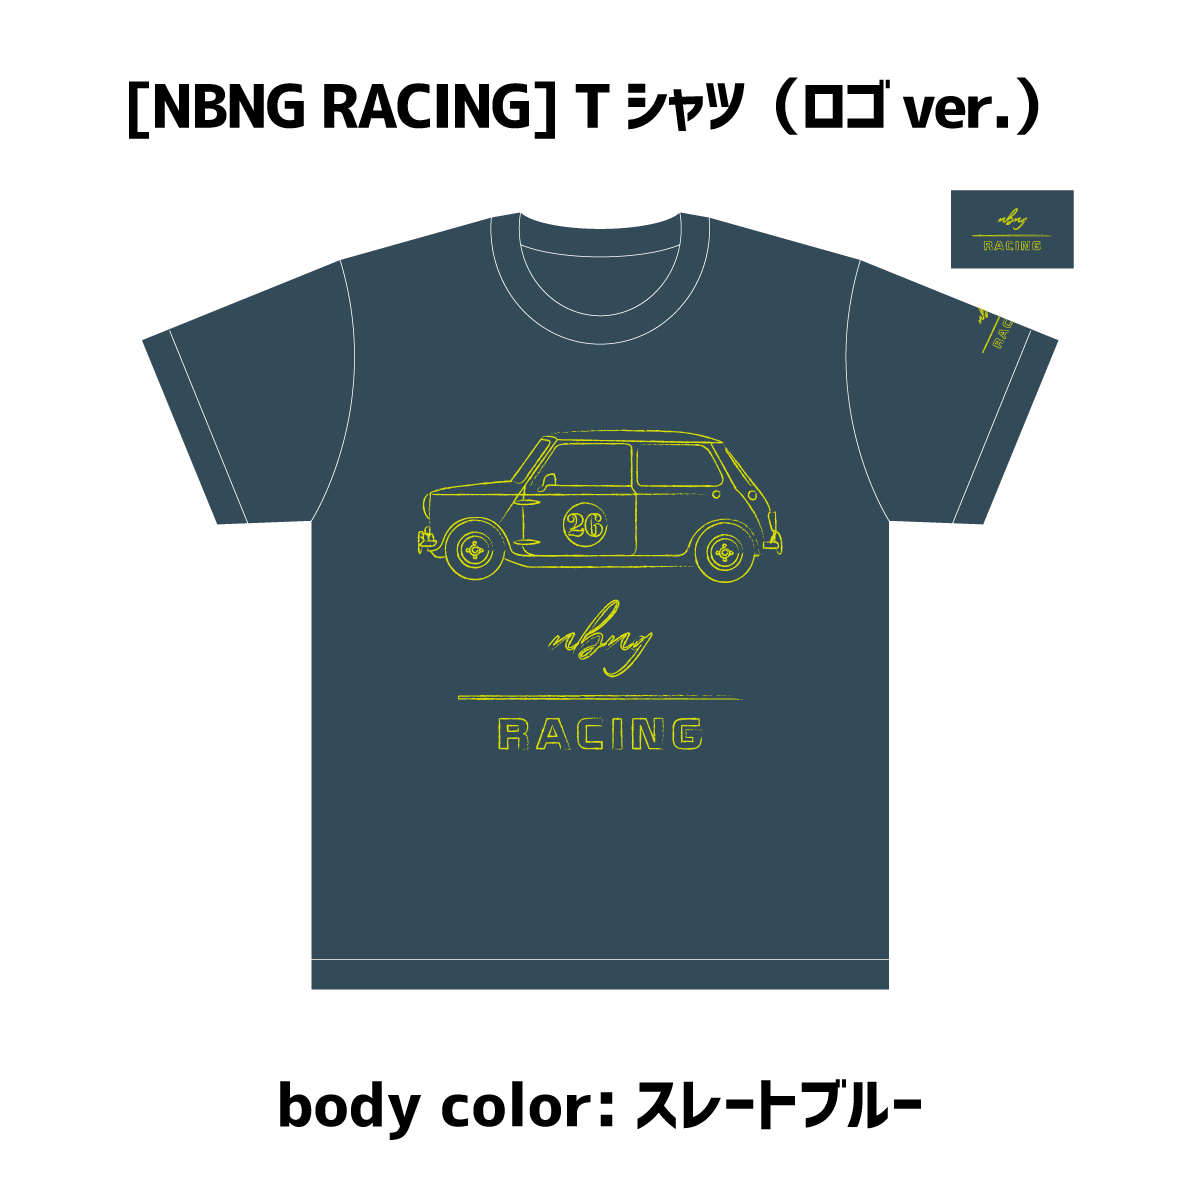 佐藤信長26thバースデー Nbng Racing Tシャツ ロゴver スレートブルー 佐藤信長 Space Craft Online Shop